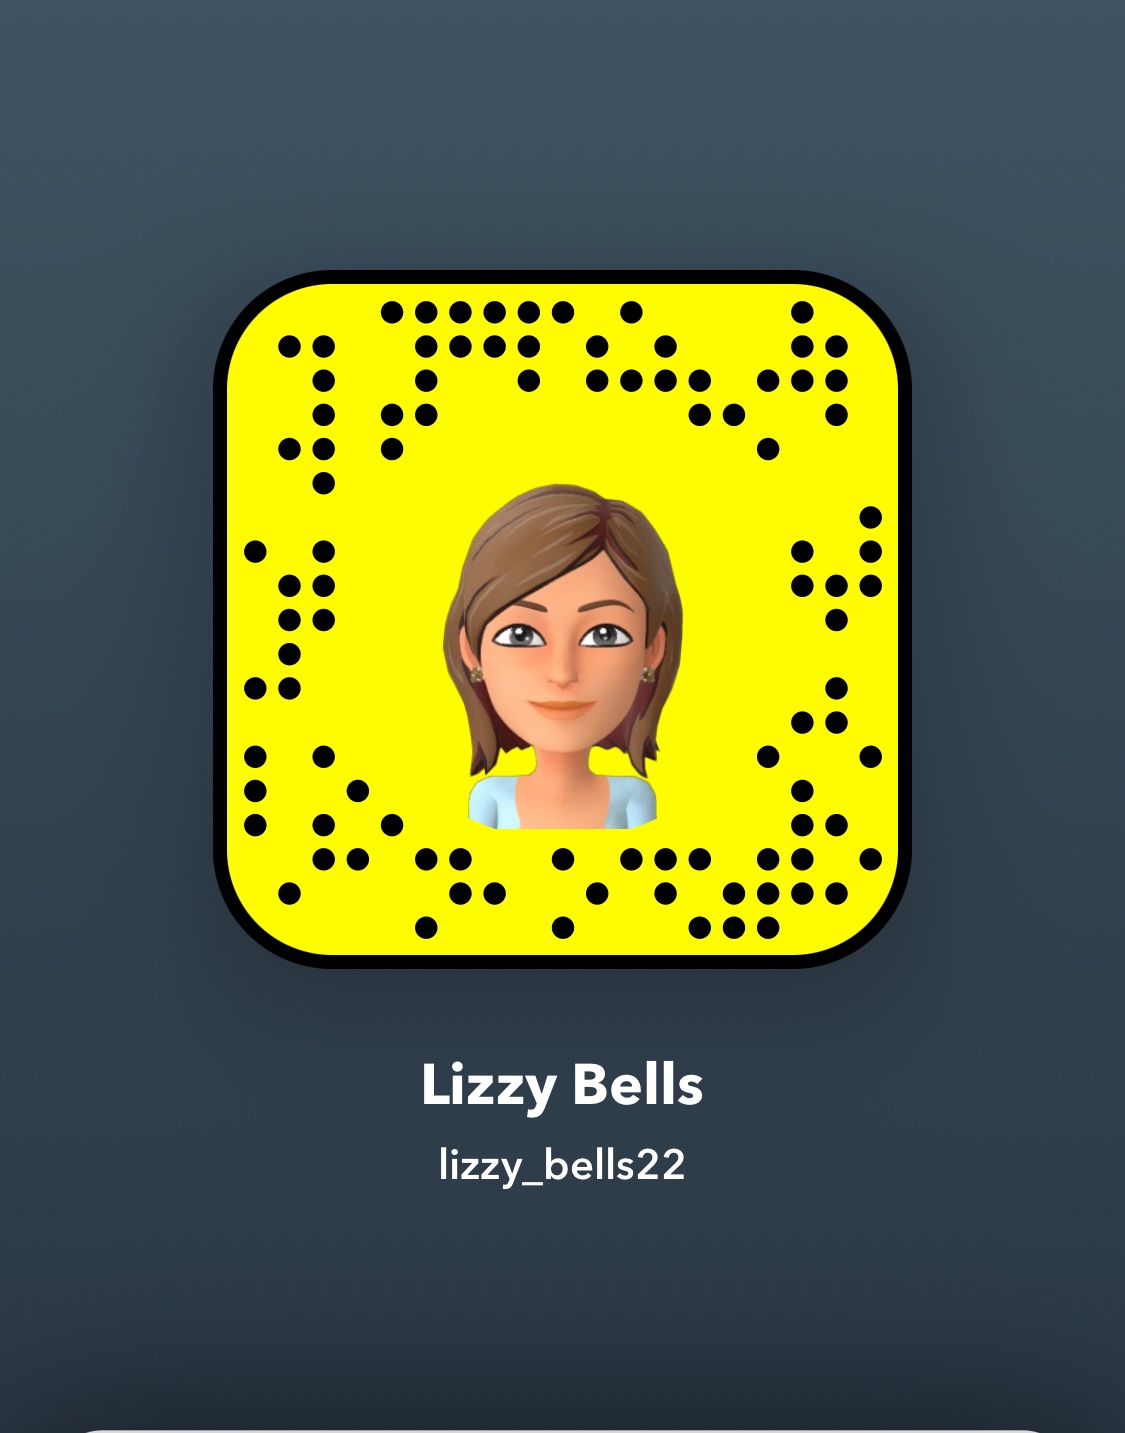 Lizzy bells